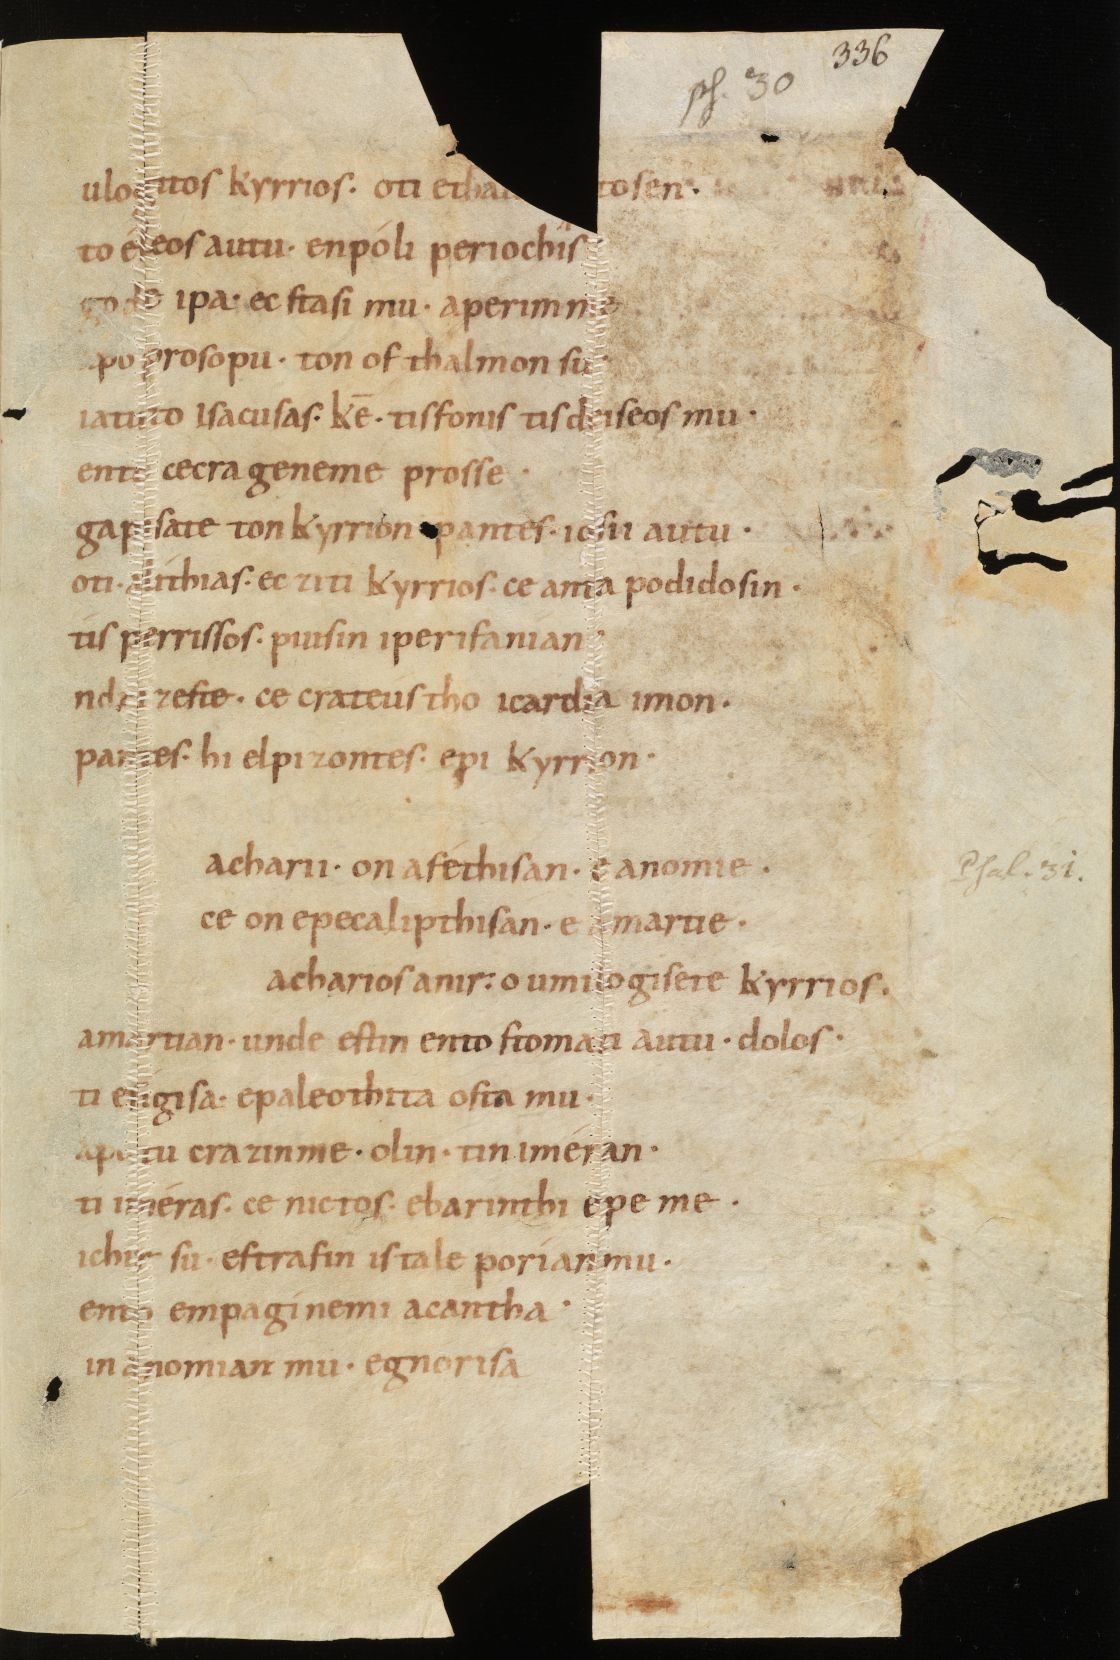 Psalterium duplex (Latin-Greek) (fragment), St. Gallen, Stiftsbibliothek St. Gallen, Cod. Sang. 1395 II, p. 336.